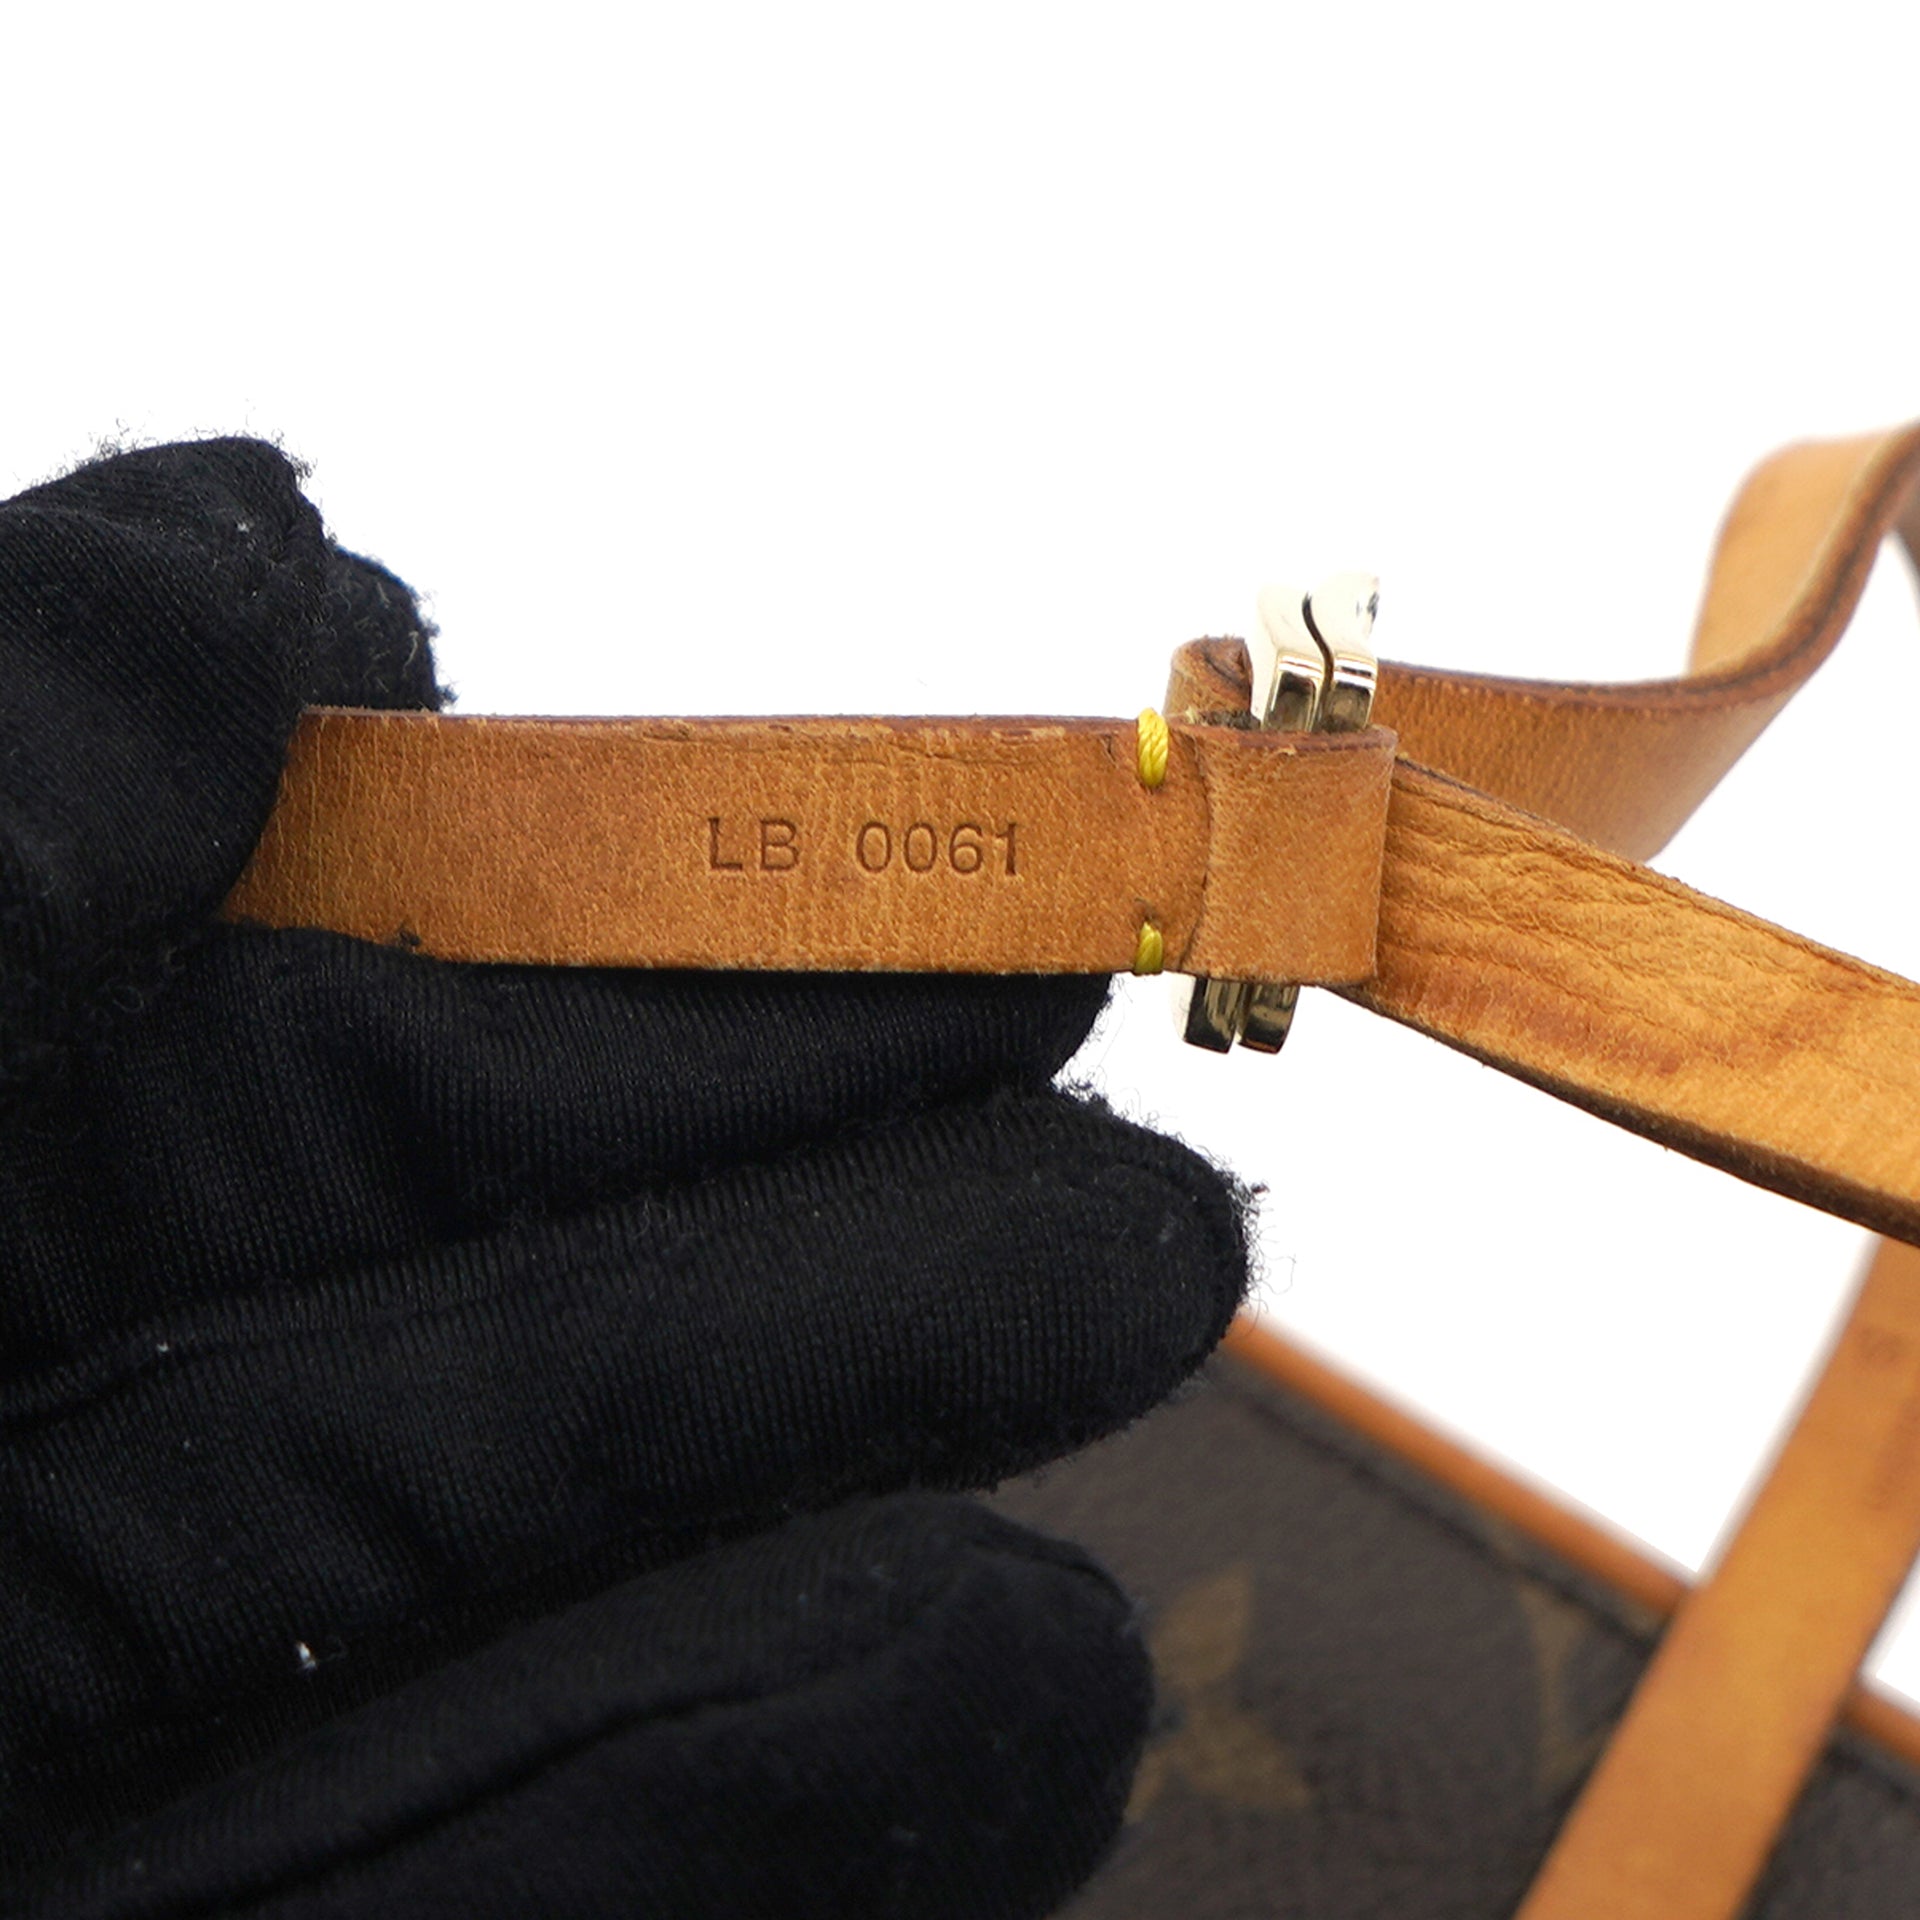 Vintage Monogram Florentine belt bag